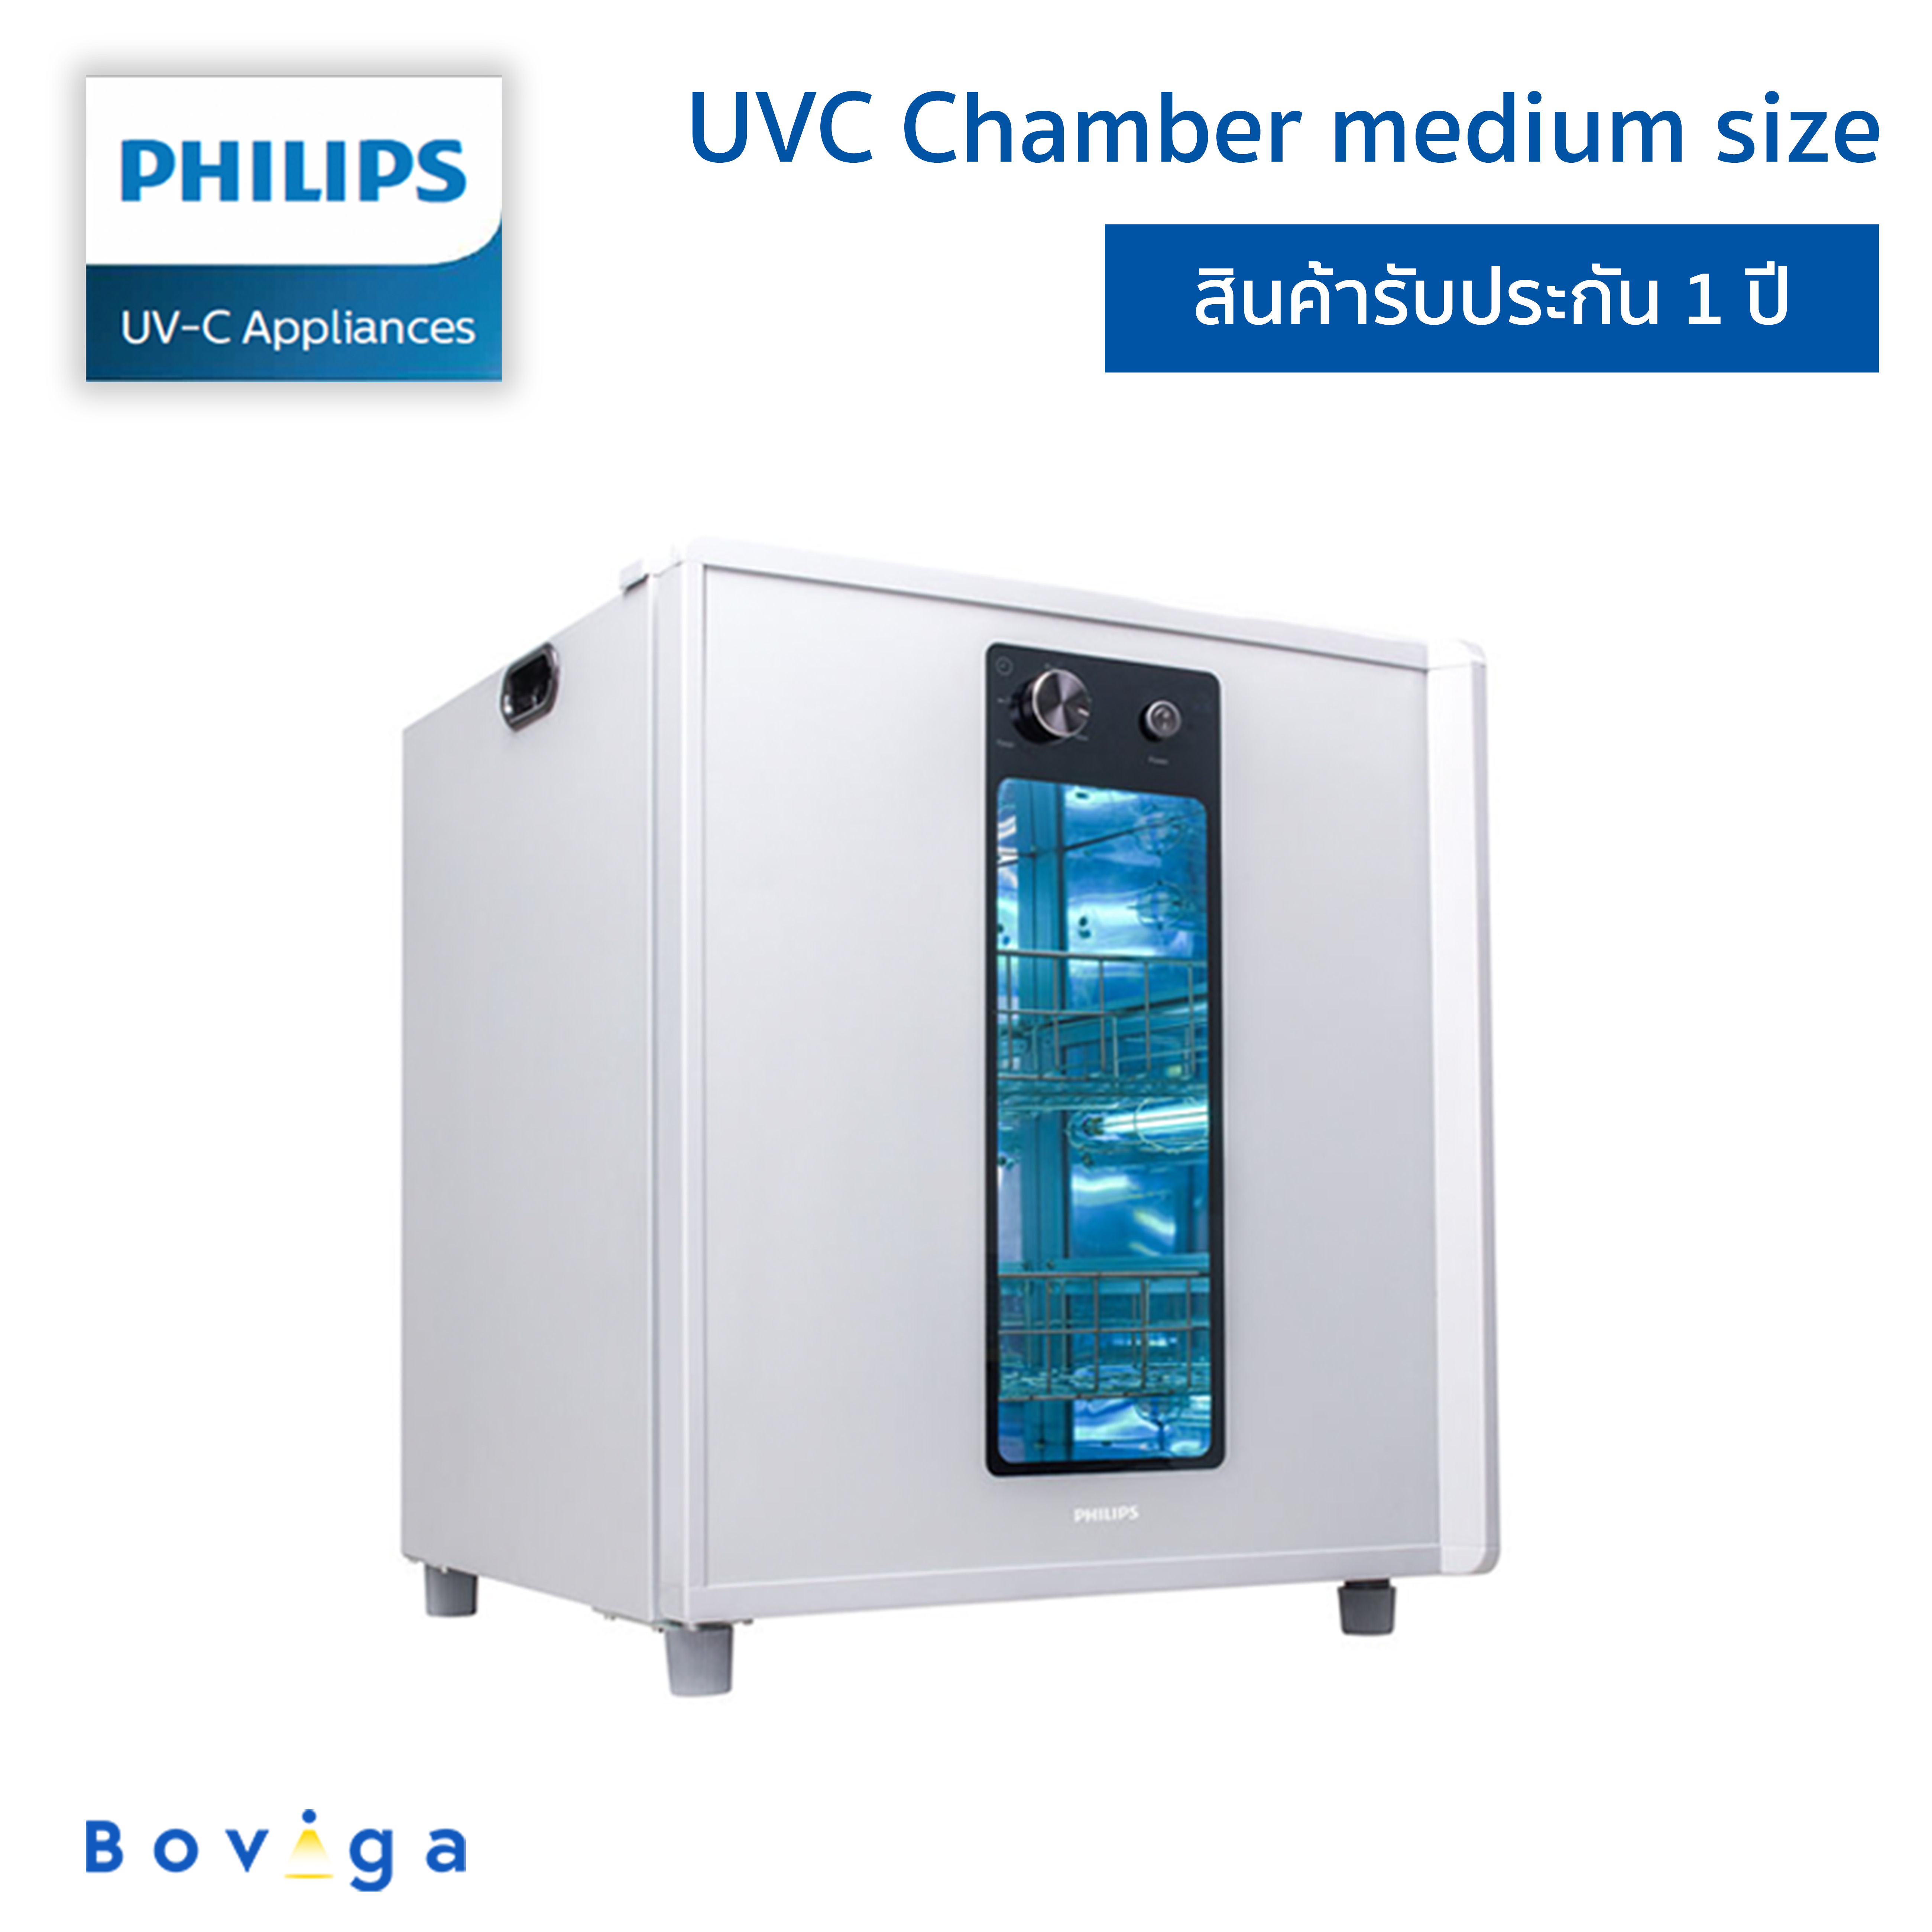 ฟิลิปส์ UVC ตู้ยับยั้งการทำงานของเชื้อโรค ขนาด Medium ความจุ 110 ลิตร | Philips UVC MEDIUM CHAMBER 100L